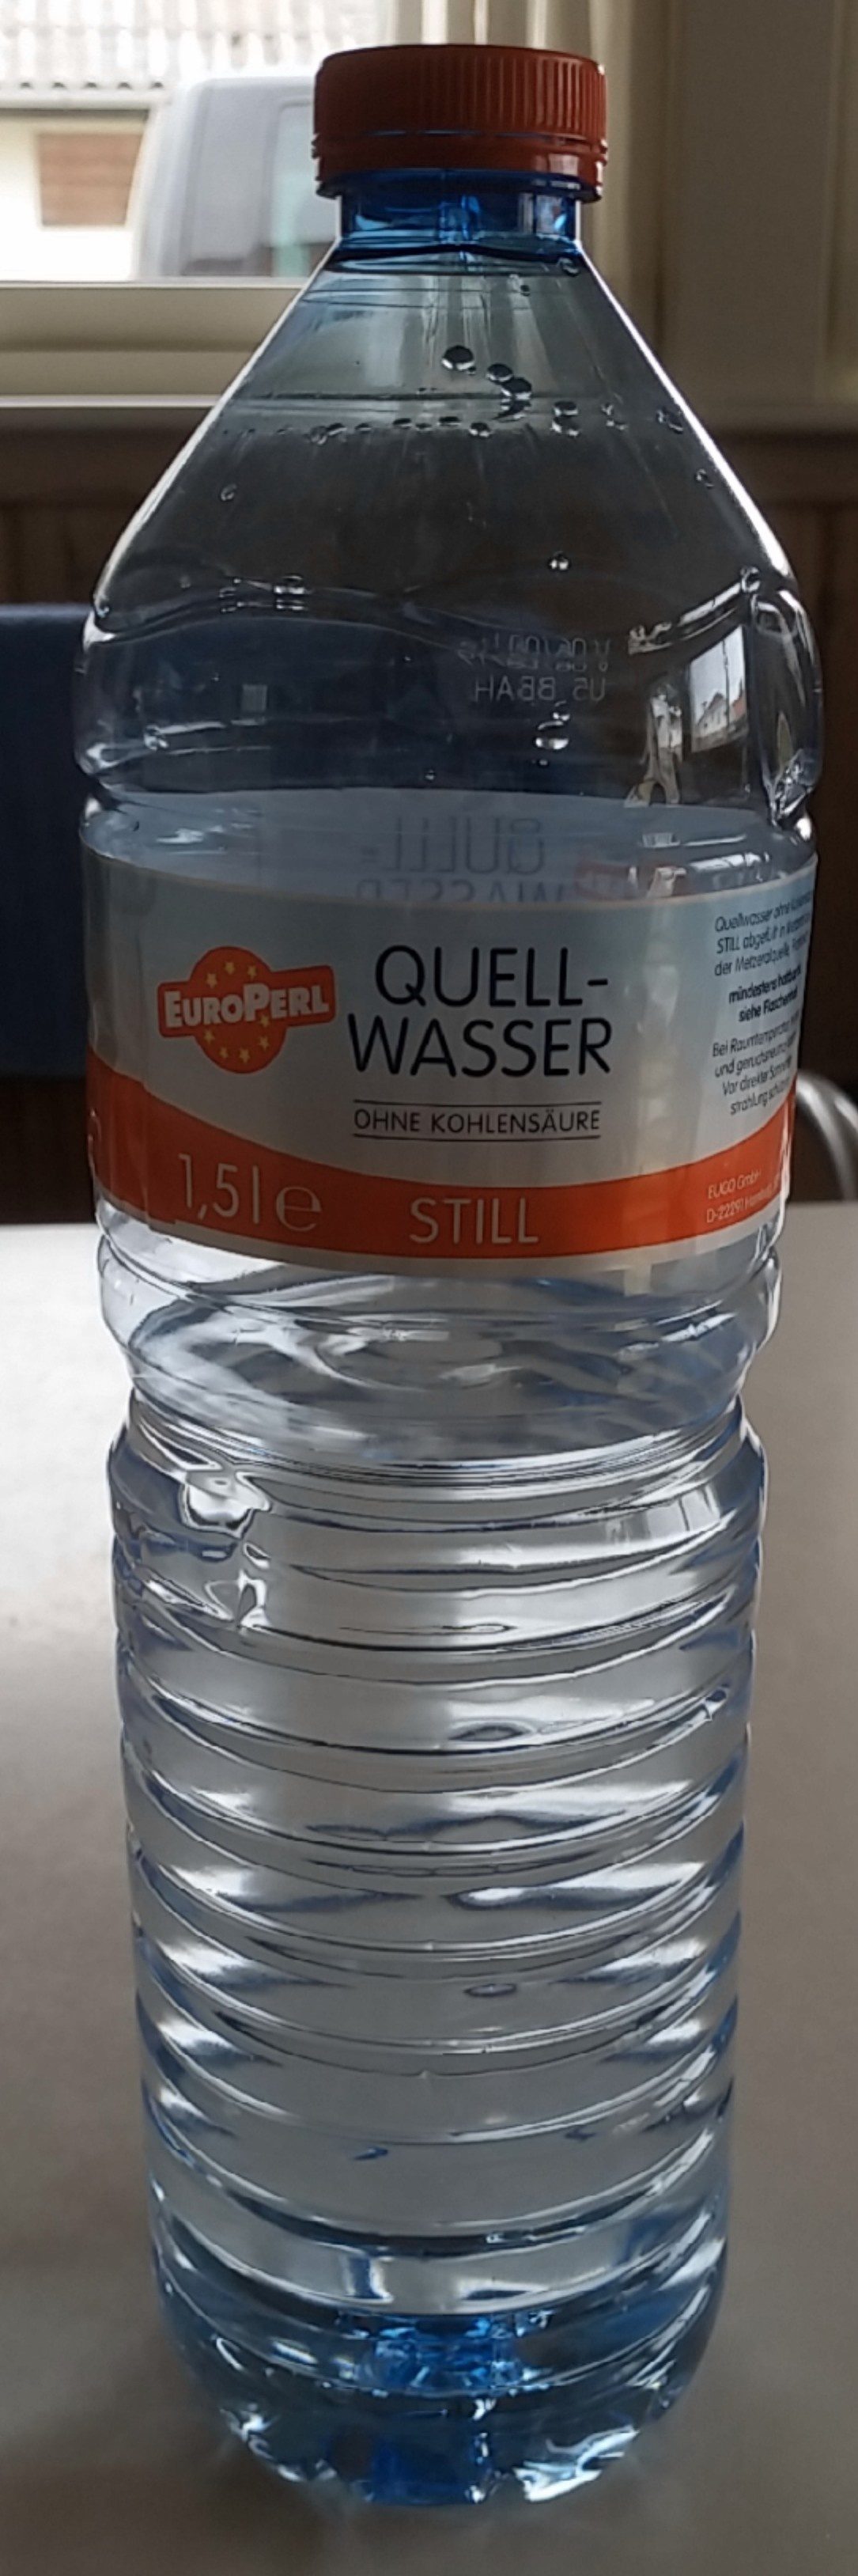 Quellwasser ohne Kohlensäure - Produkt